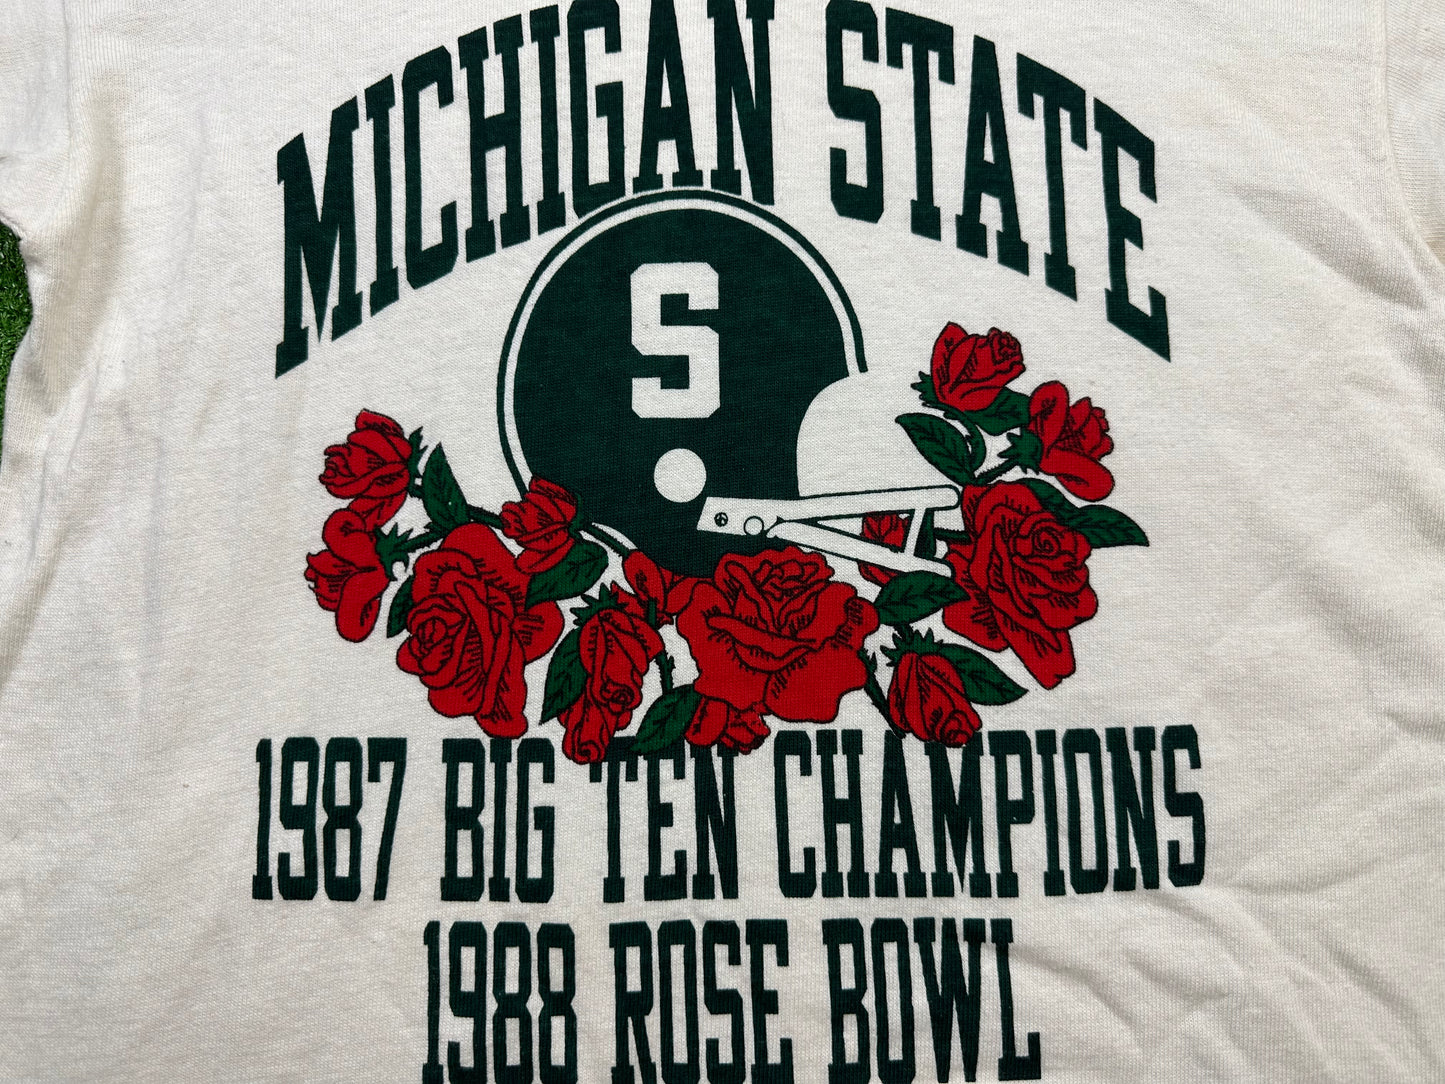 Michigan State 88 Rose Bowl T-Shirt